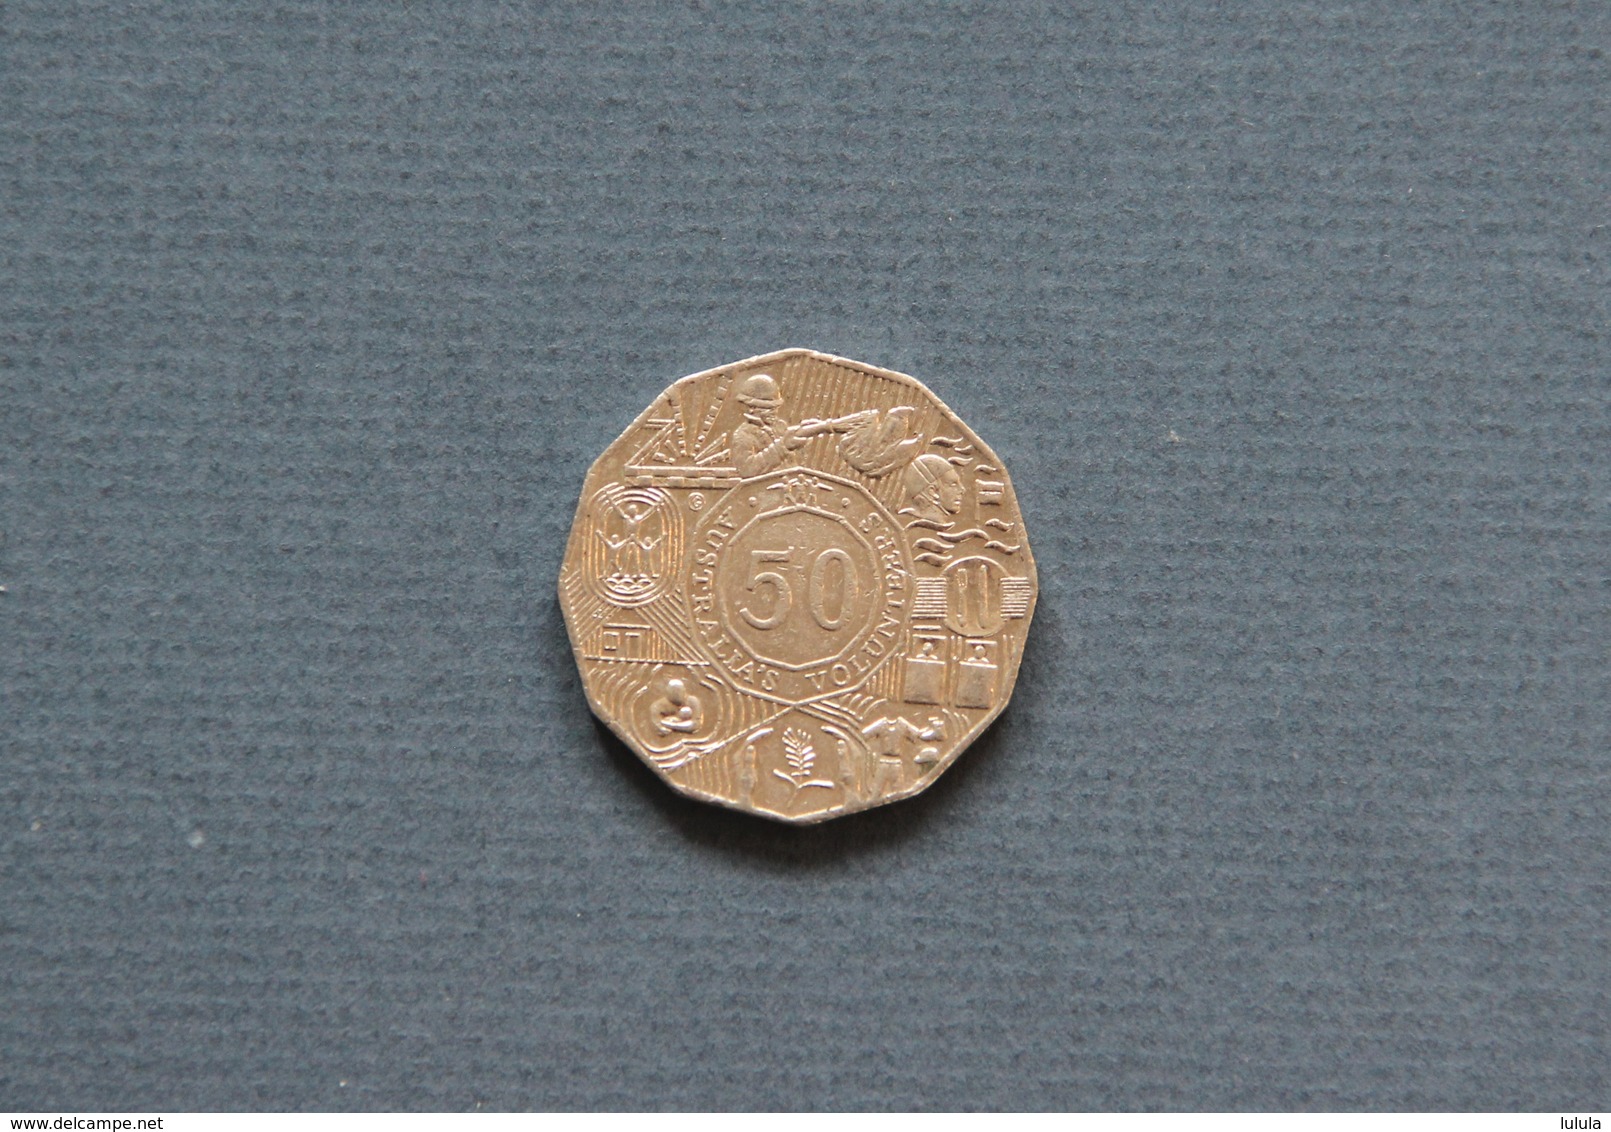 Australia's Volunteers 2003 50c Commemorative Coin QEII - 50 Cents